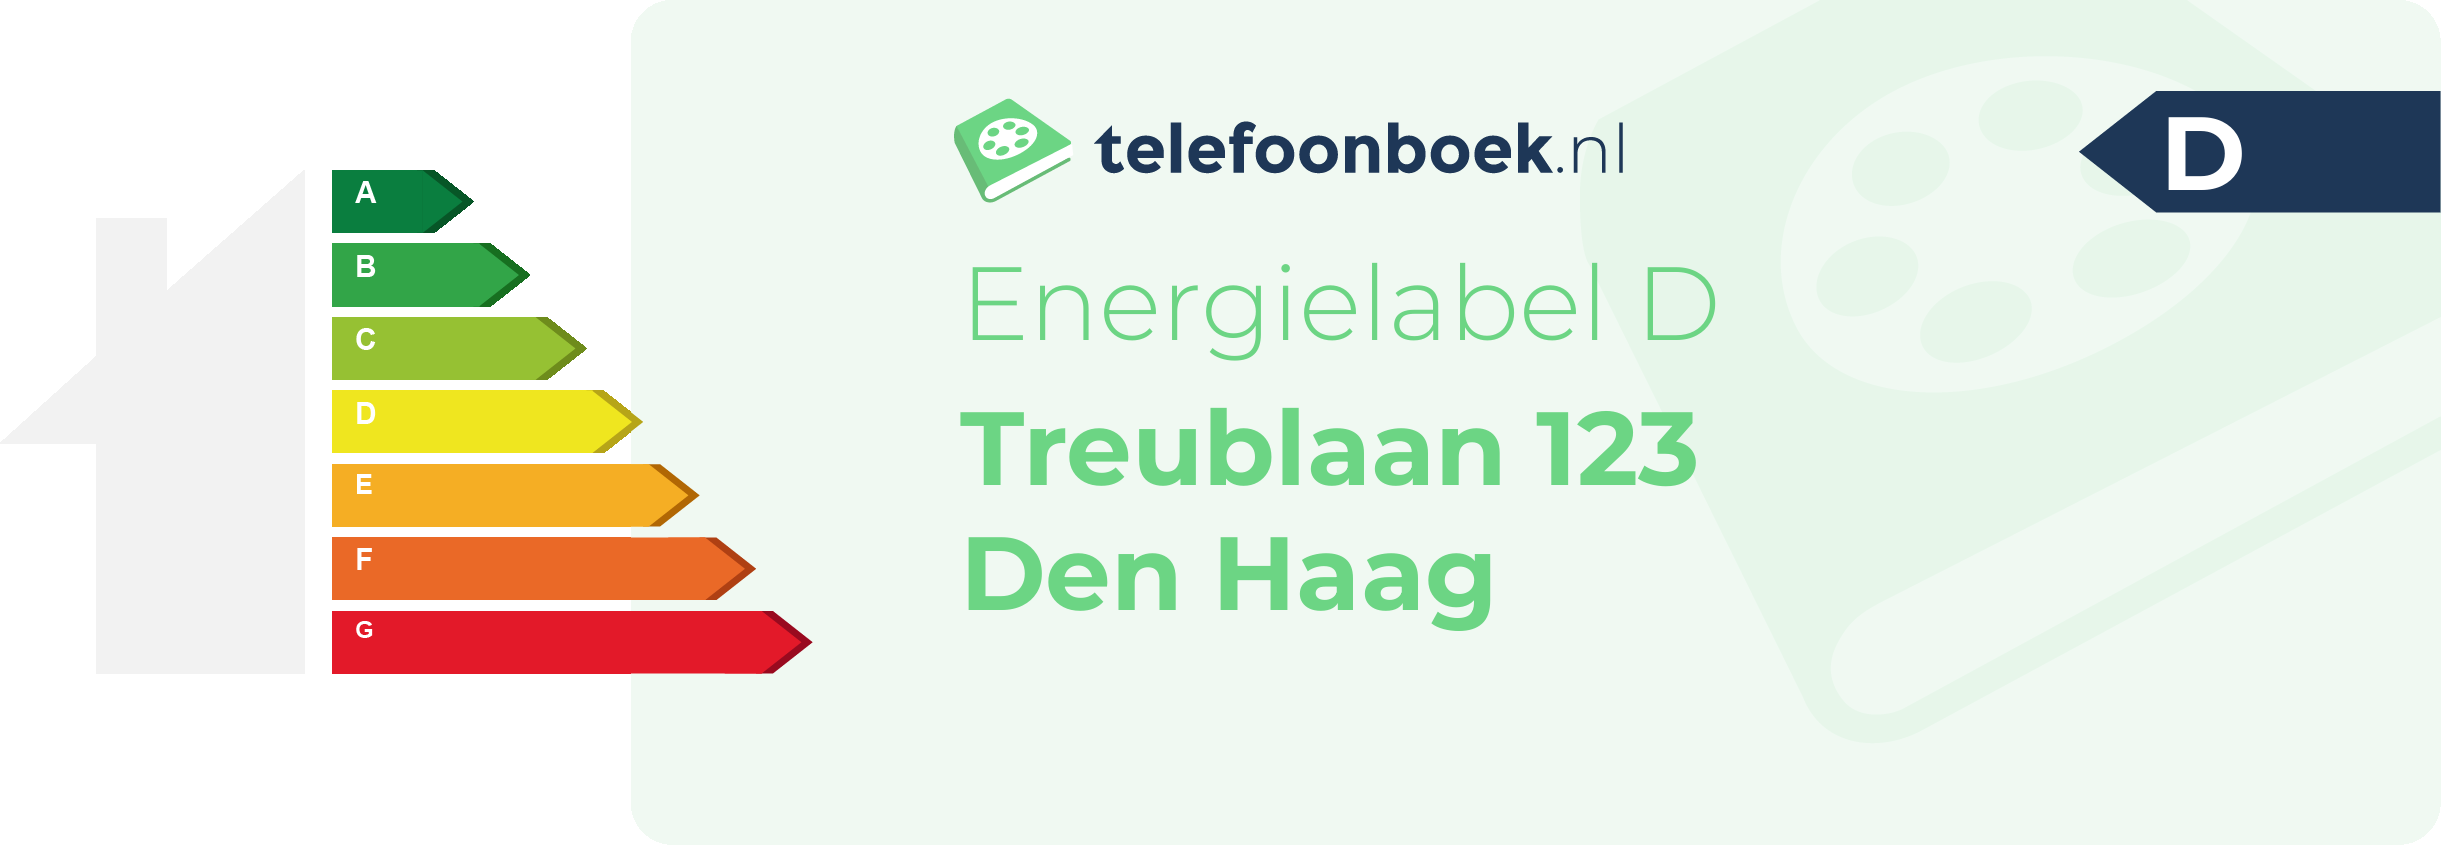 Energielabel Treublaan 123 Den Haag